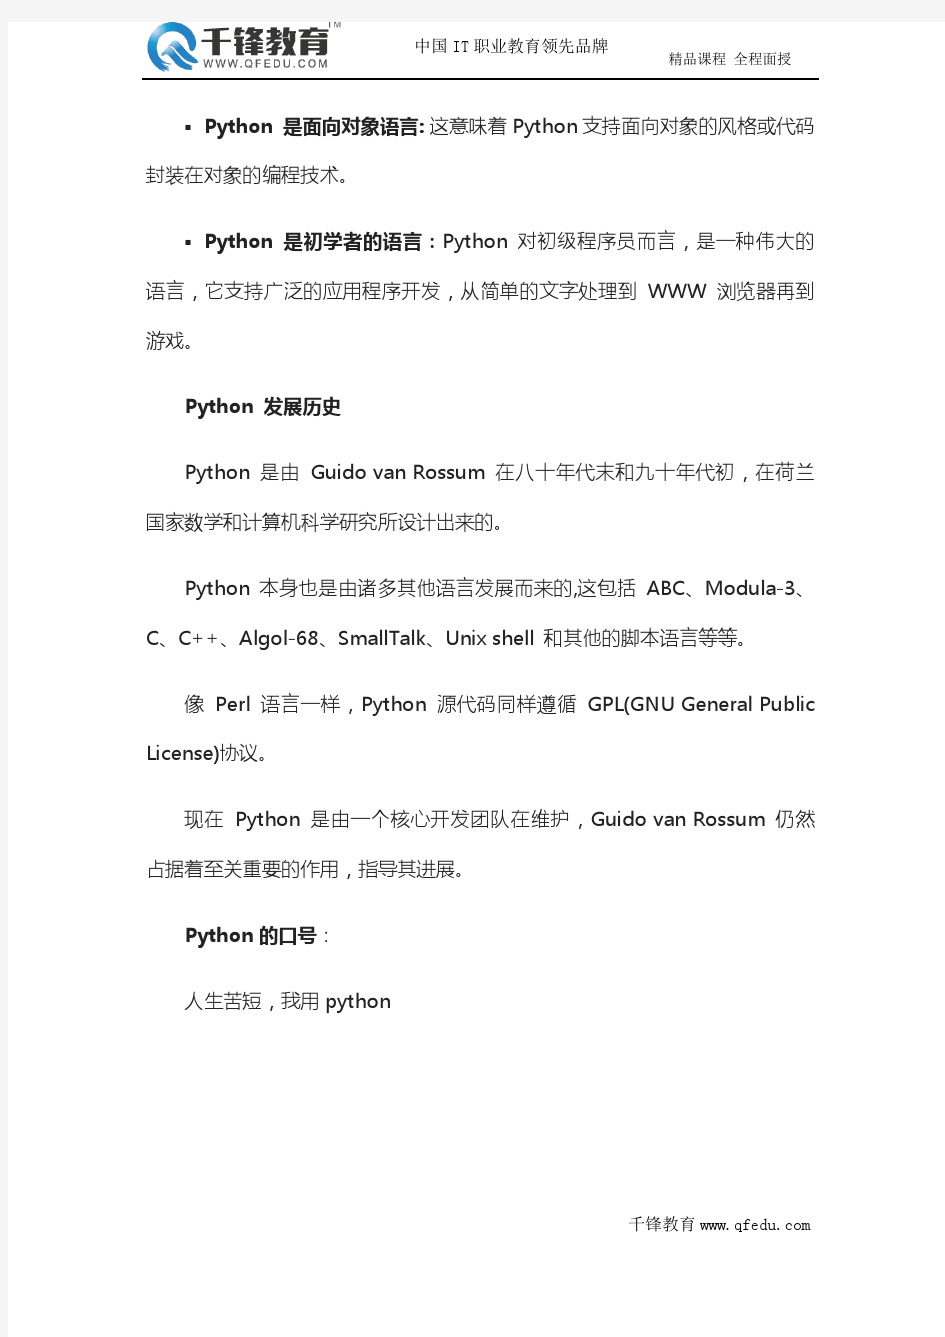 python网络编程基础教程,从零开始